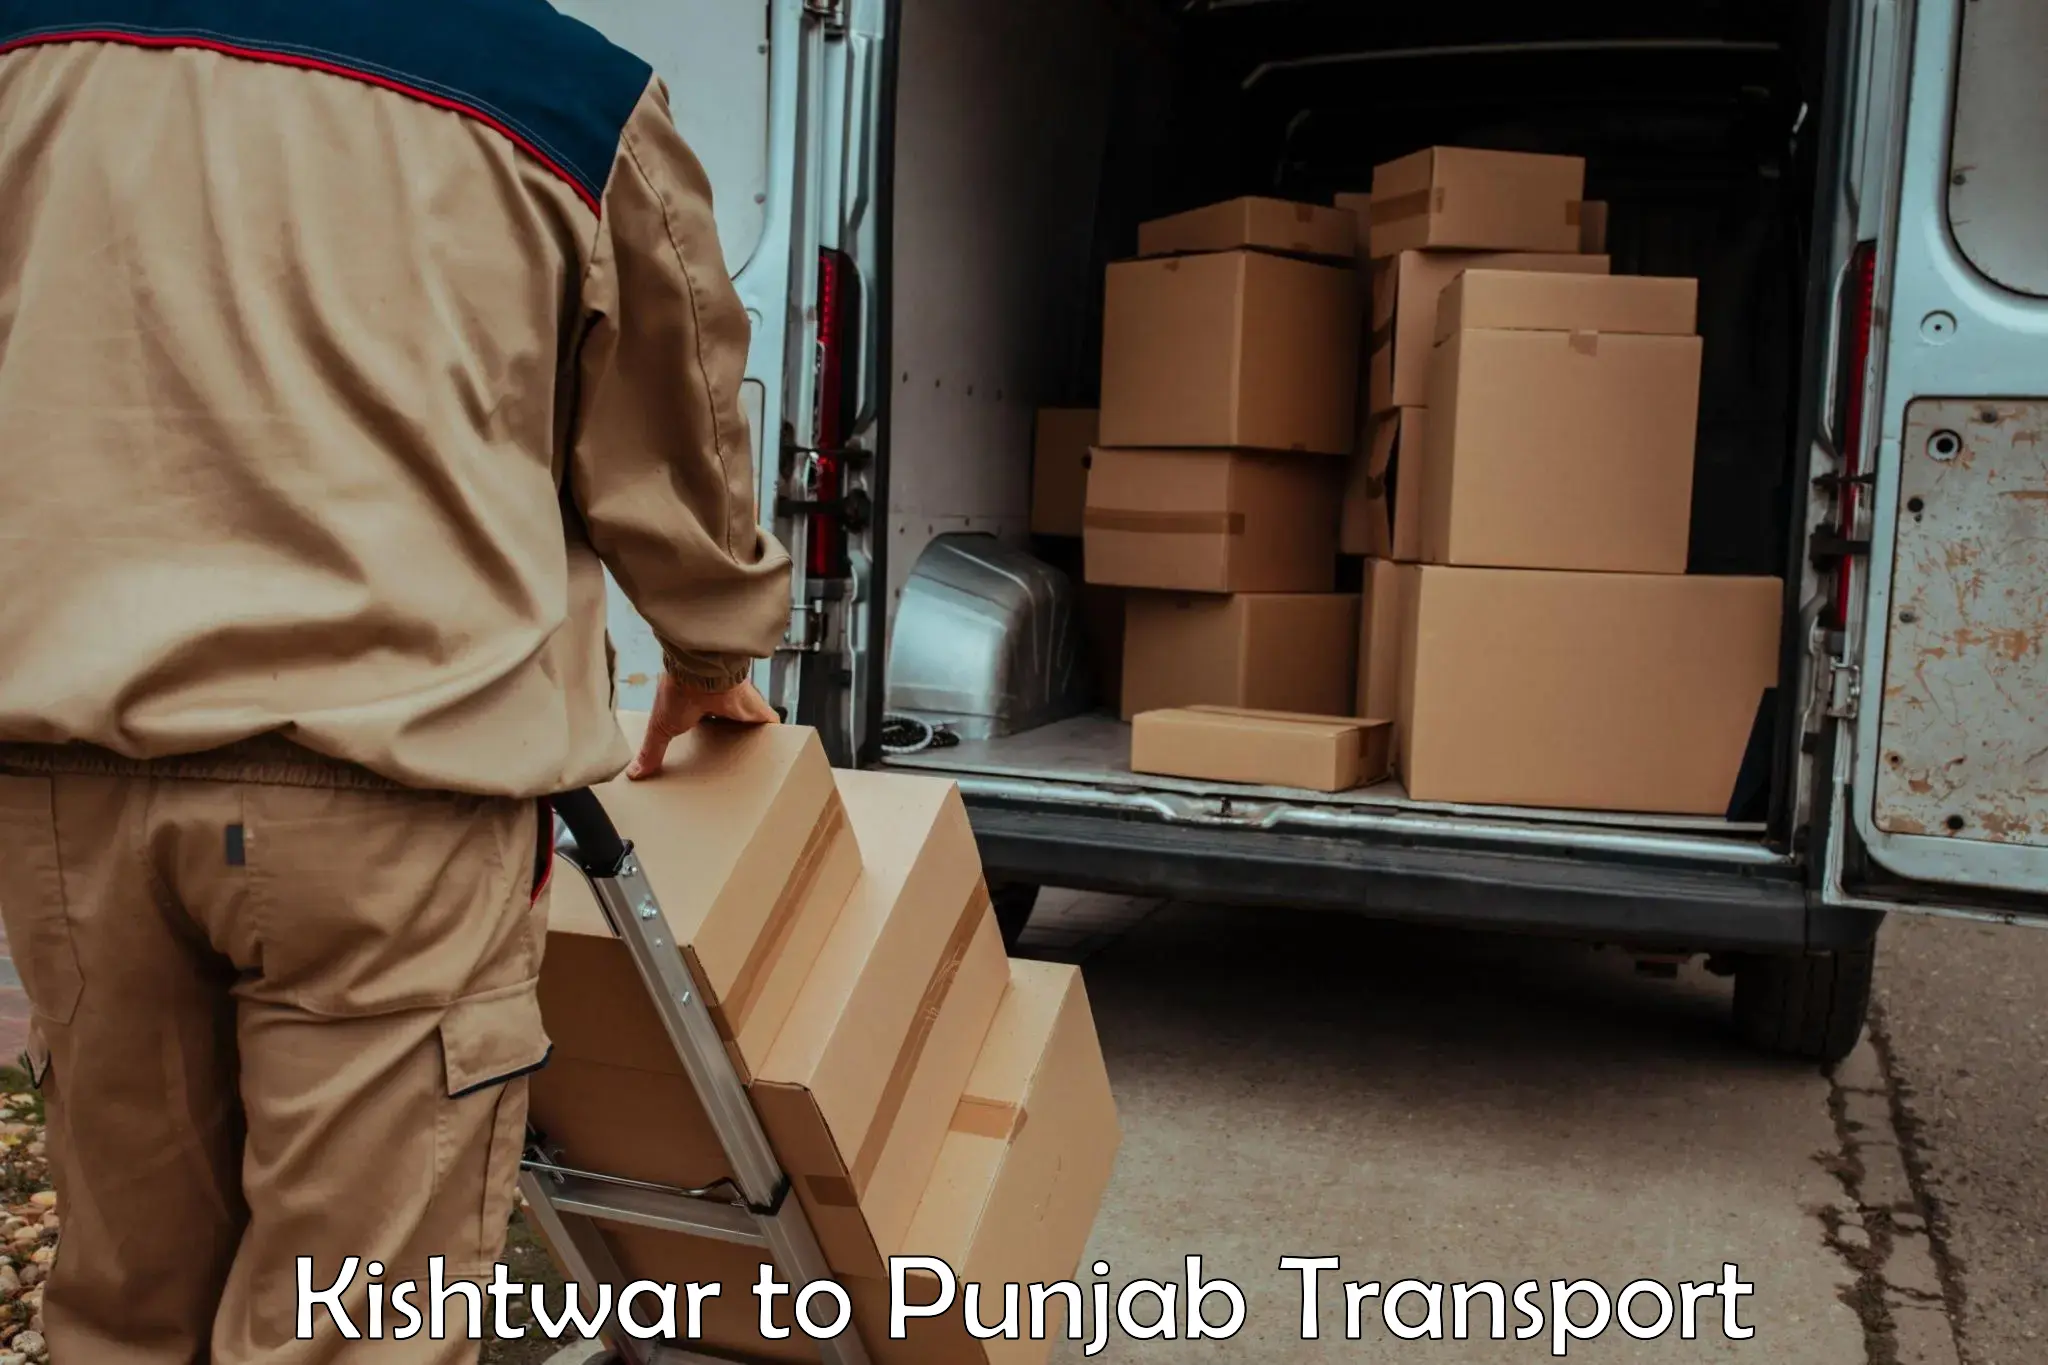 Delivery service Kishtwar to Punjab